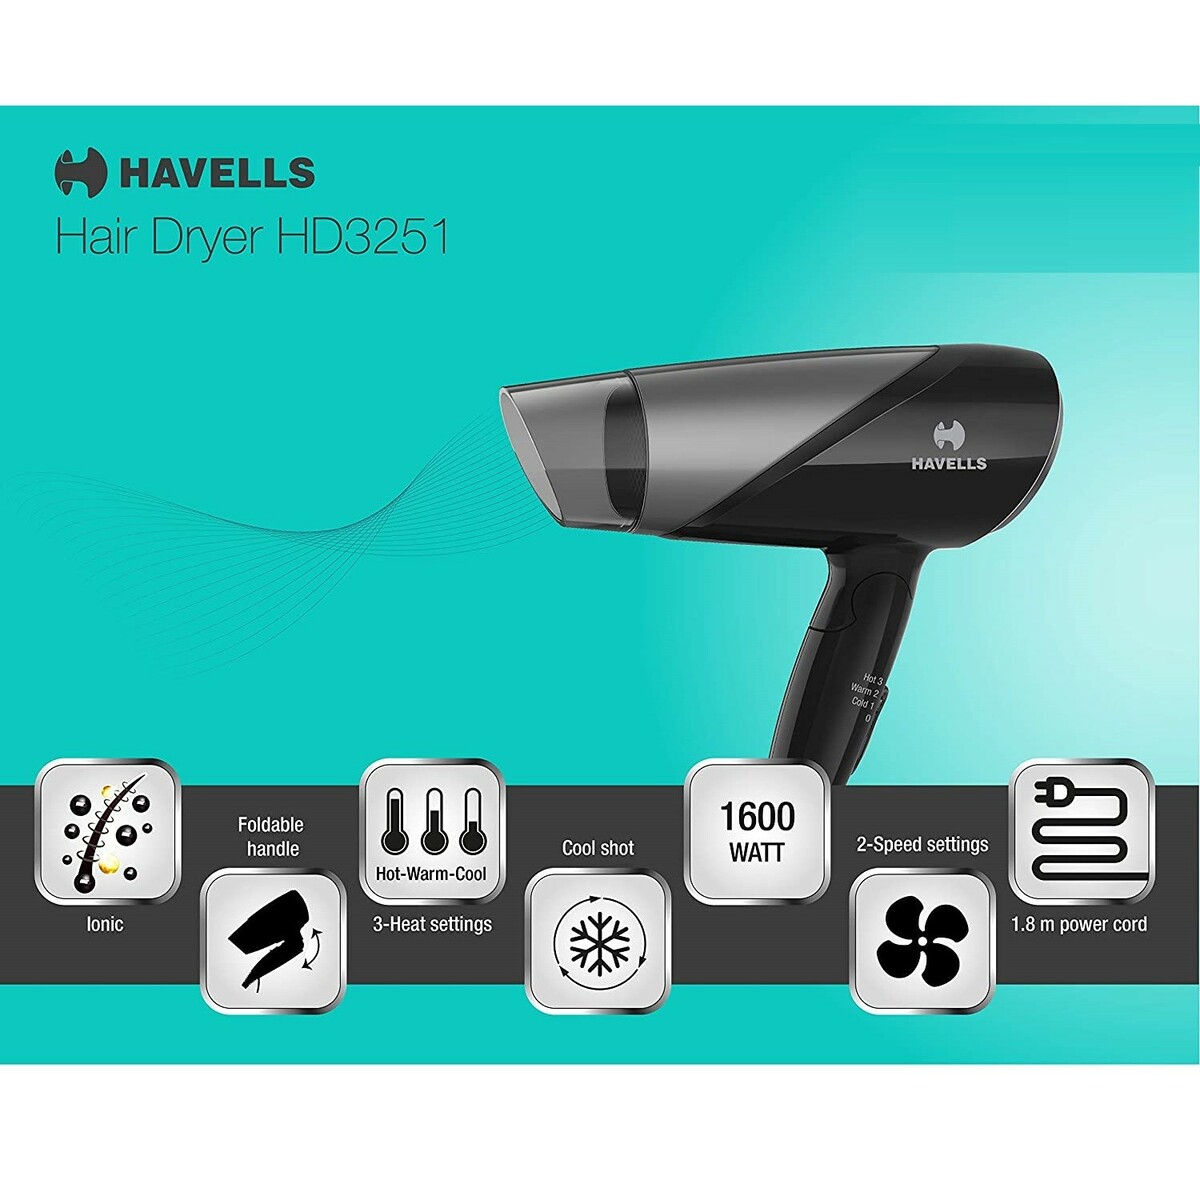 Havells Hair Dryer HD 3251